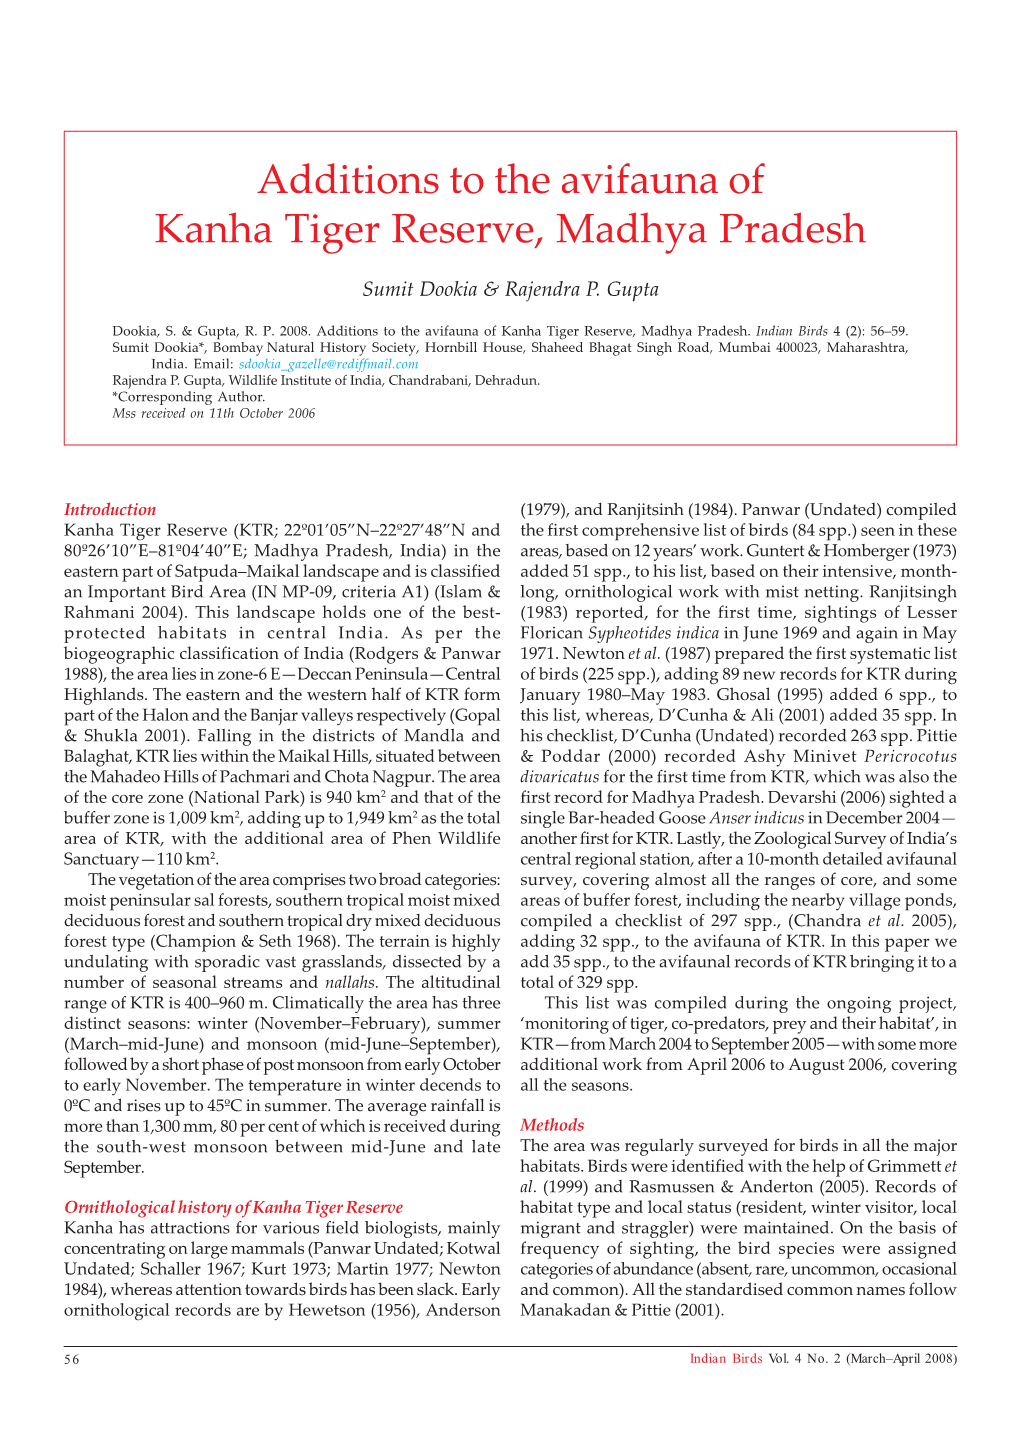 Additions to the Avifauna of Kanha Tiger Reserve, Madhya Pradesh